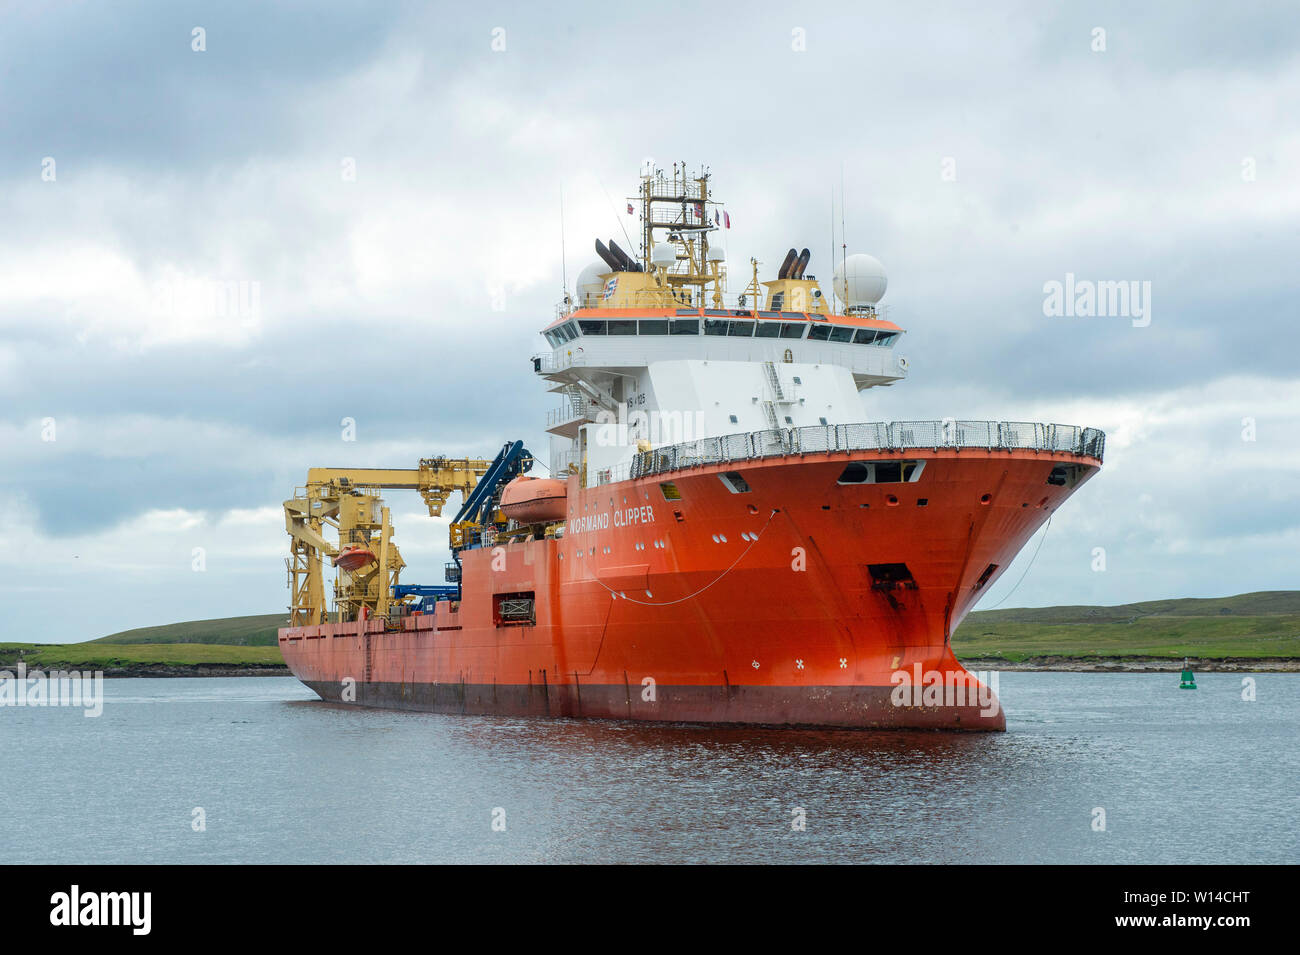 Normand Clipper l'accostage et mettre à terre plate-forme pétrolière désaffectée ferraille de plates-formes pétrolières en mer du Nord à l'Ecosse Shetland Lerwick Banque D'Images